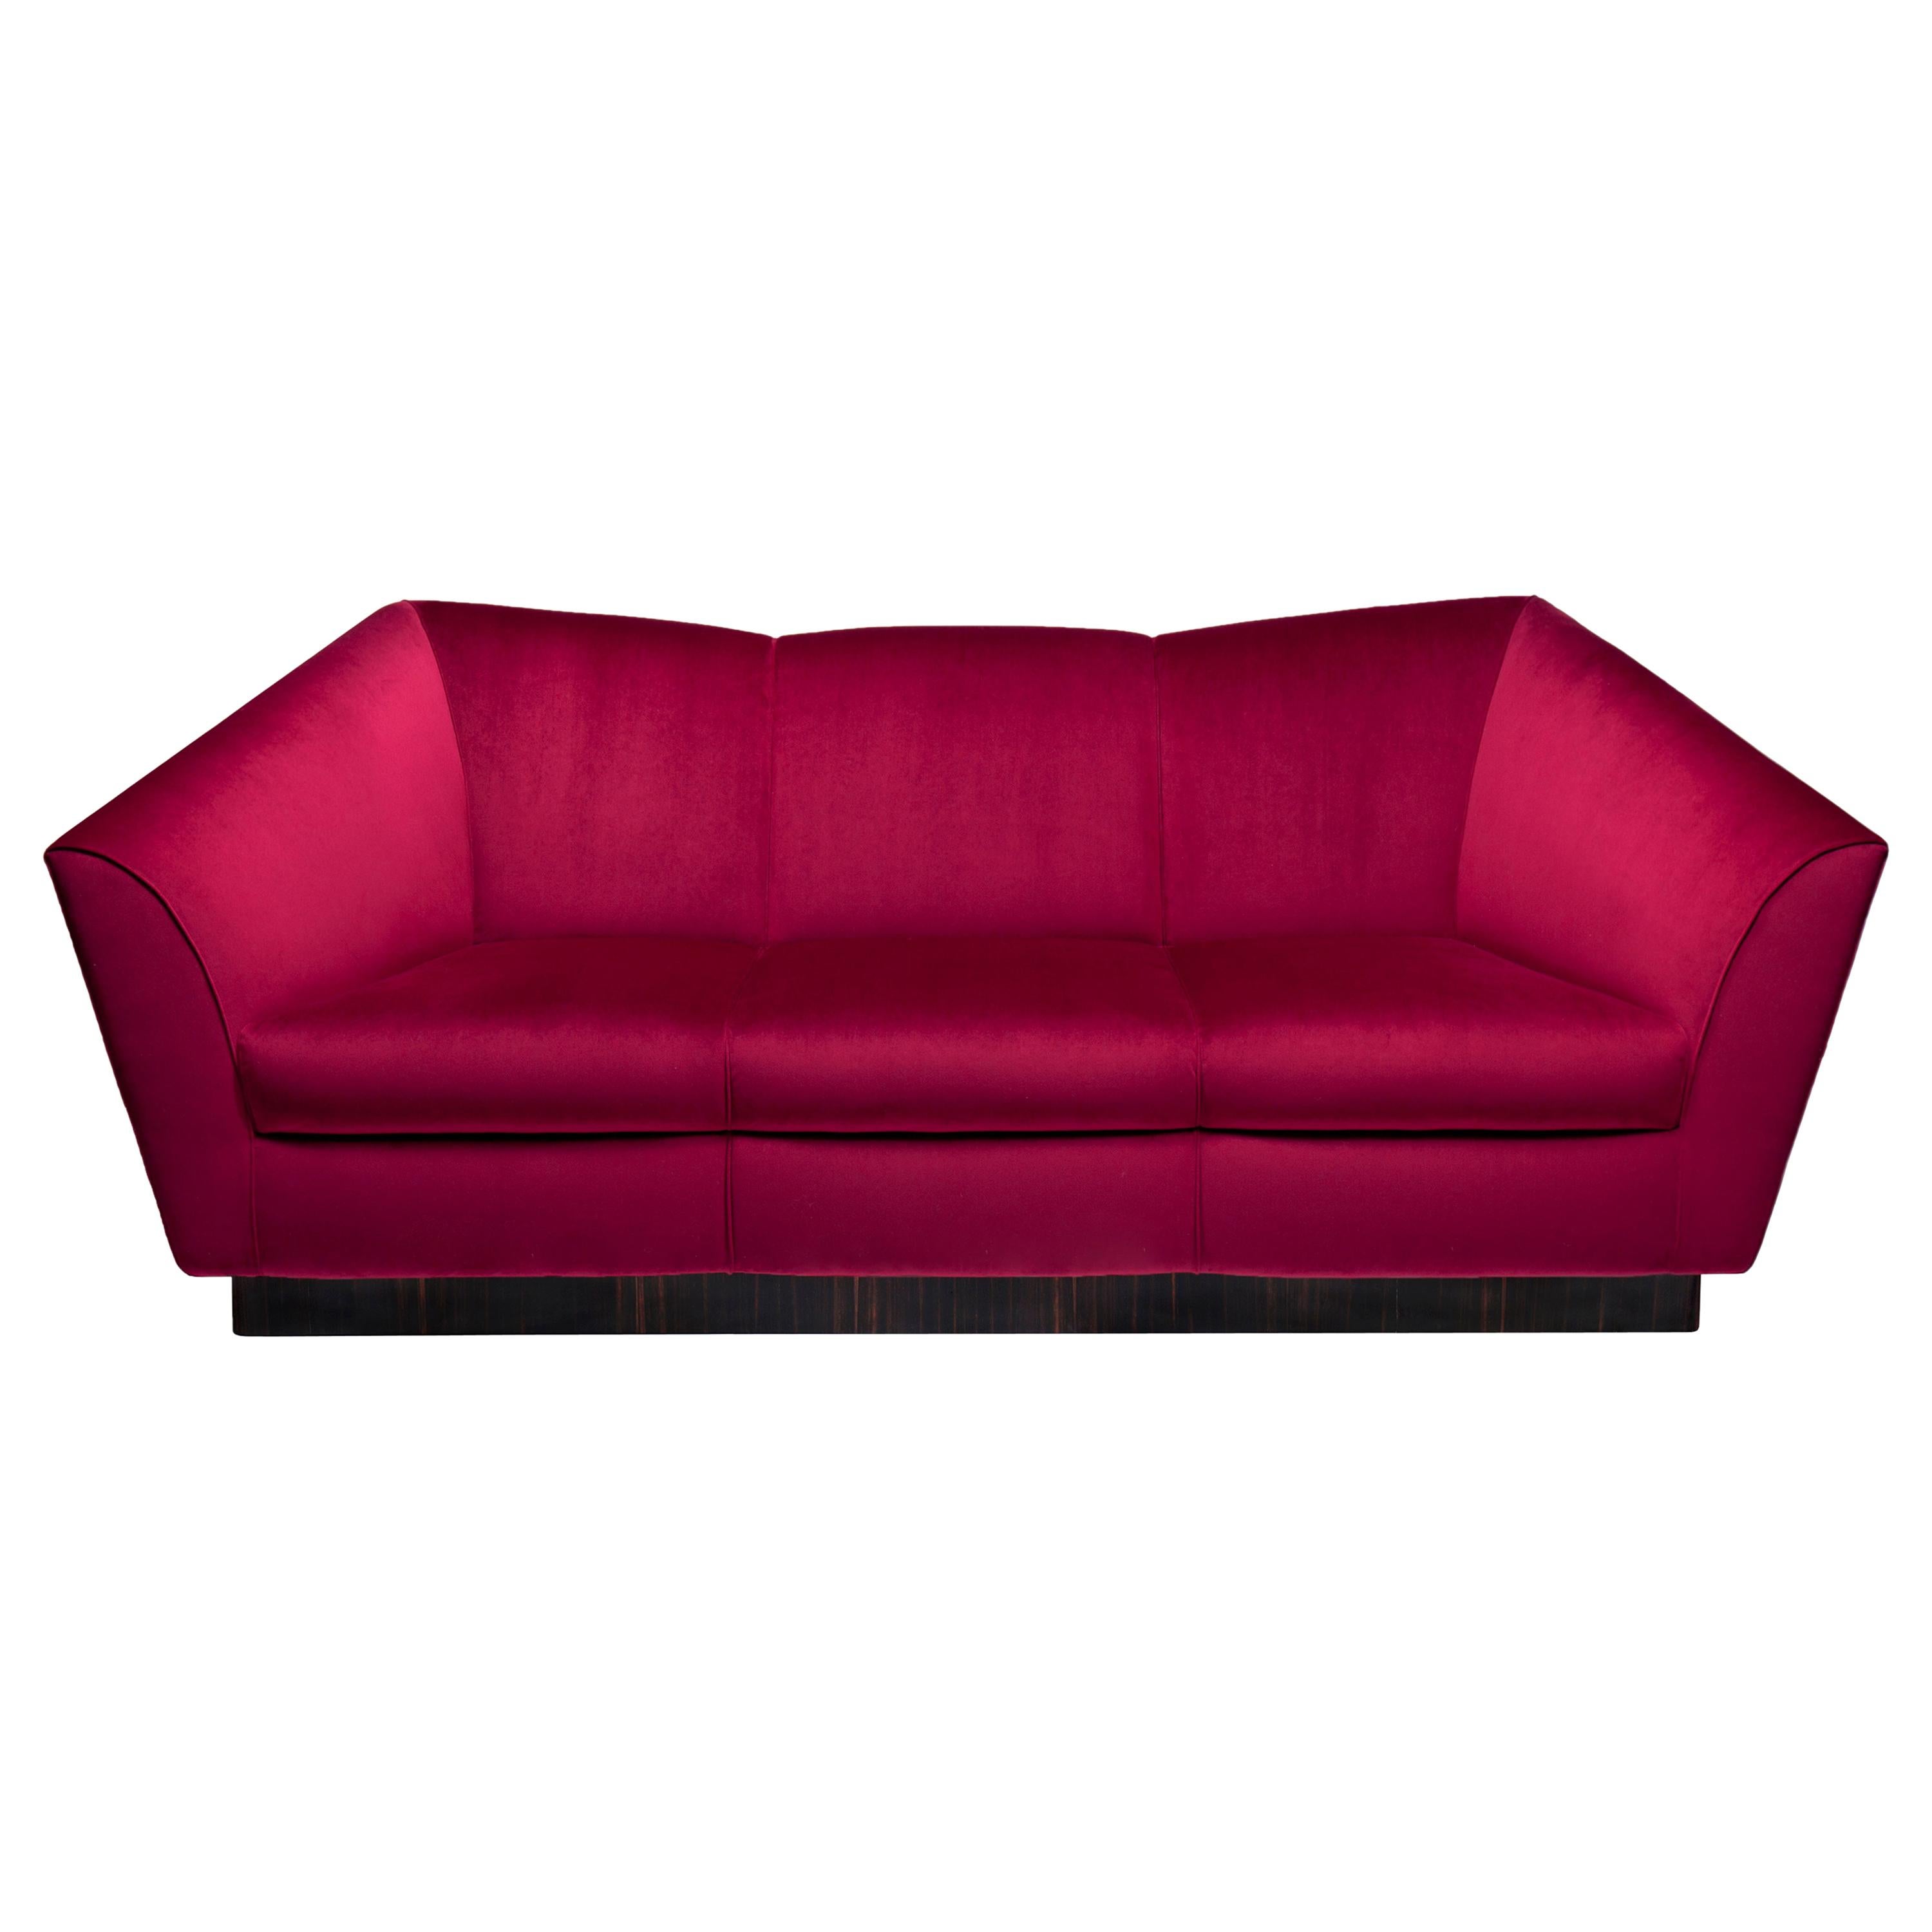 Eagle Three-Seat Sofa, Velvet and Ebony, InsidherLand by Joana Santos Barbosa